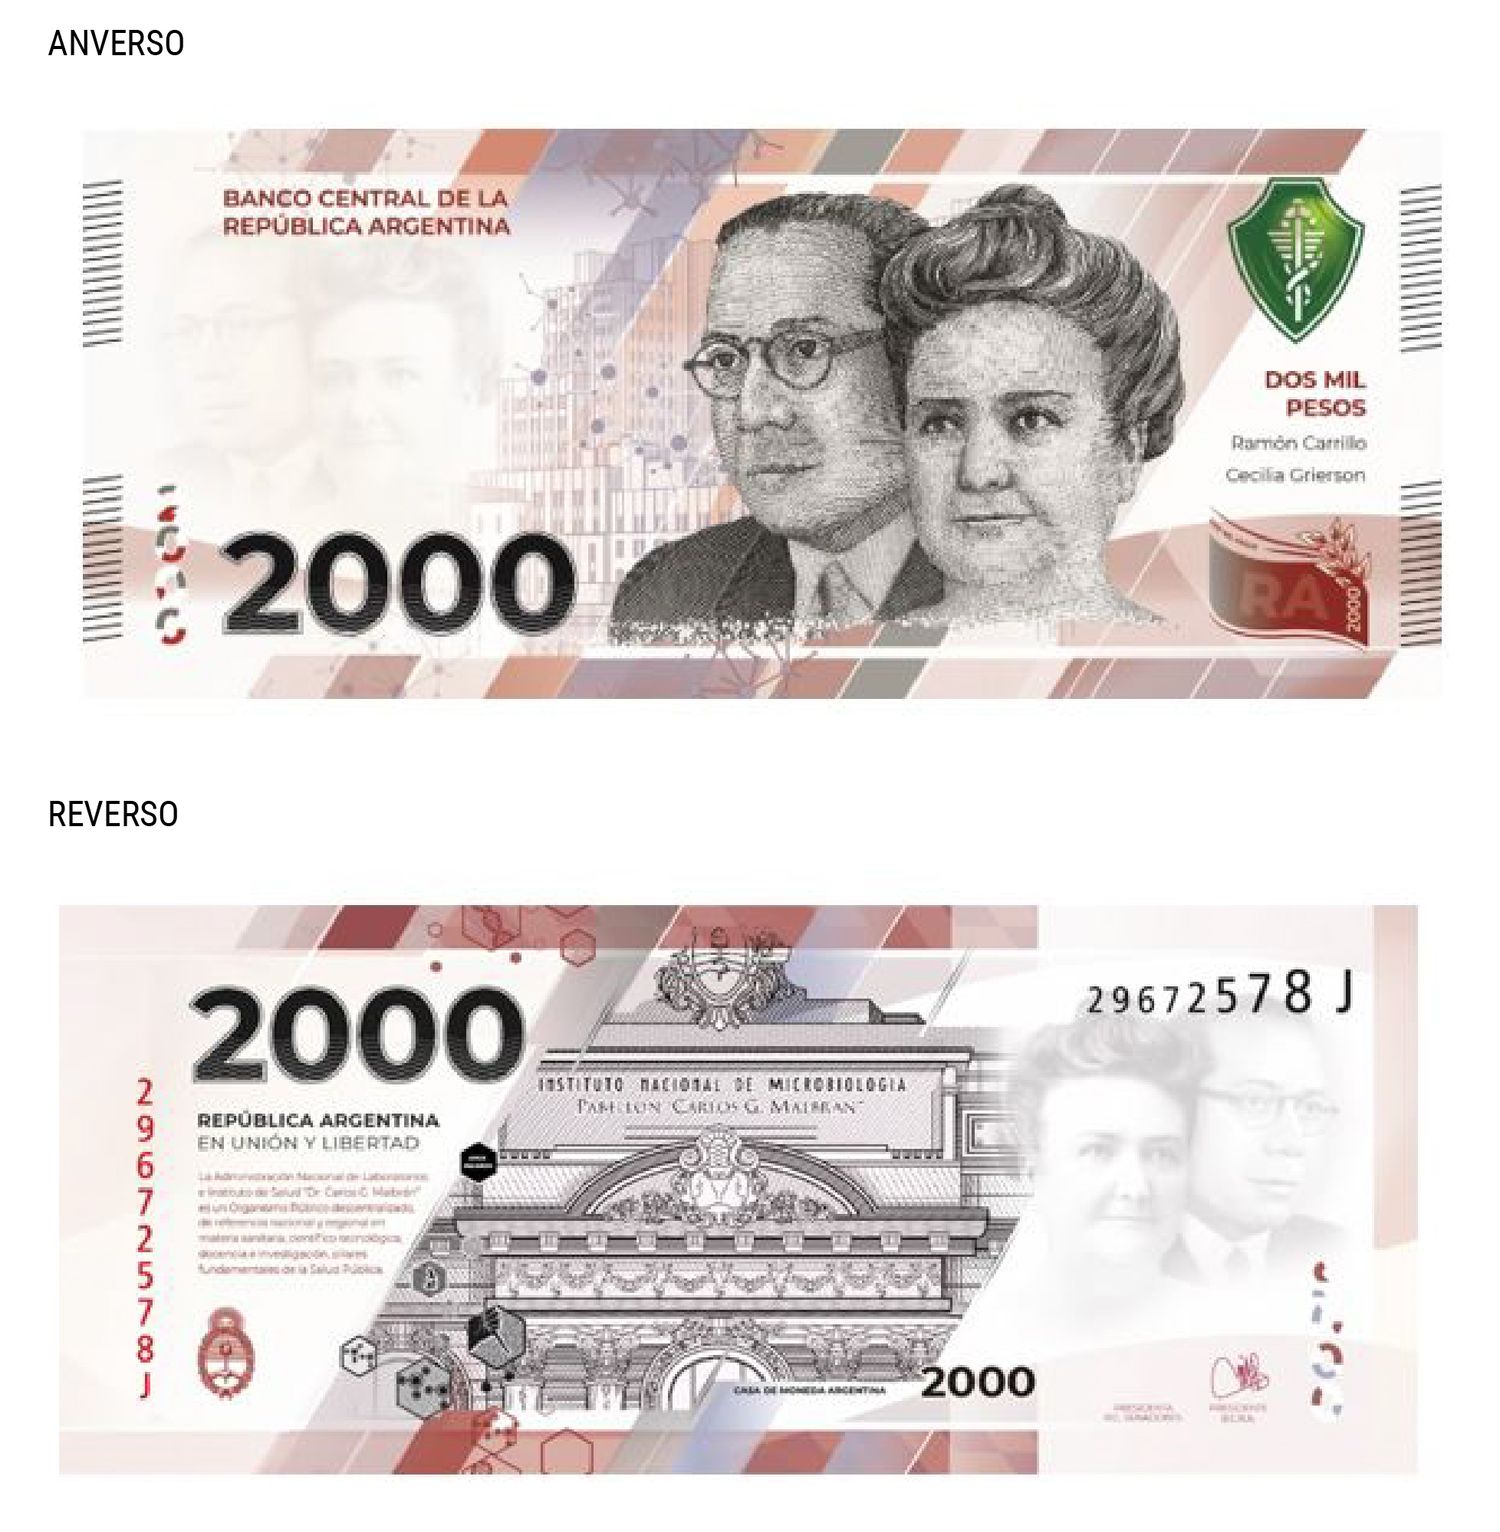 El Banco Central emitirá un billete de 2 mil pesos, poco más de 5 dólares blue de estos días